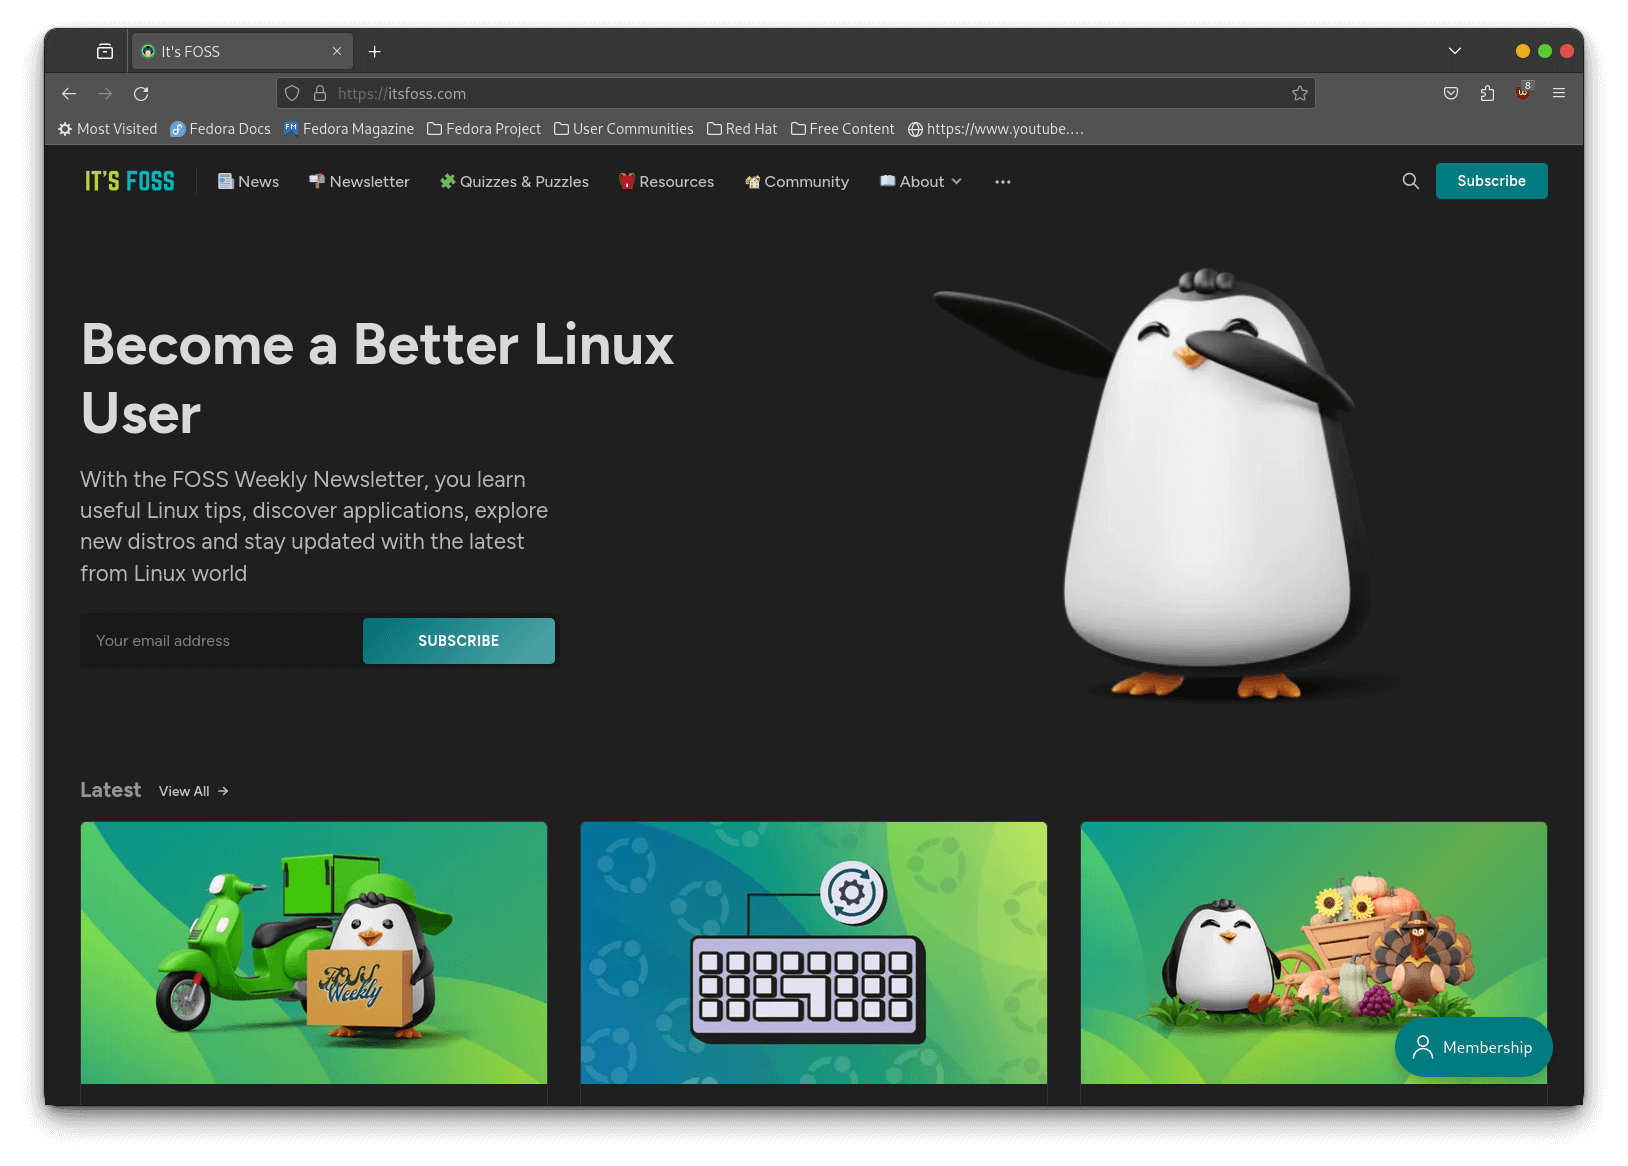 a screenshot of firefox browser featuring itsfoss.com